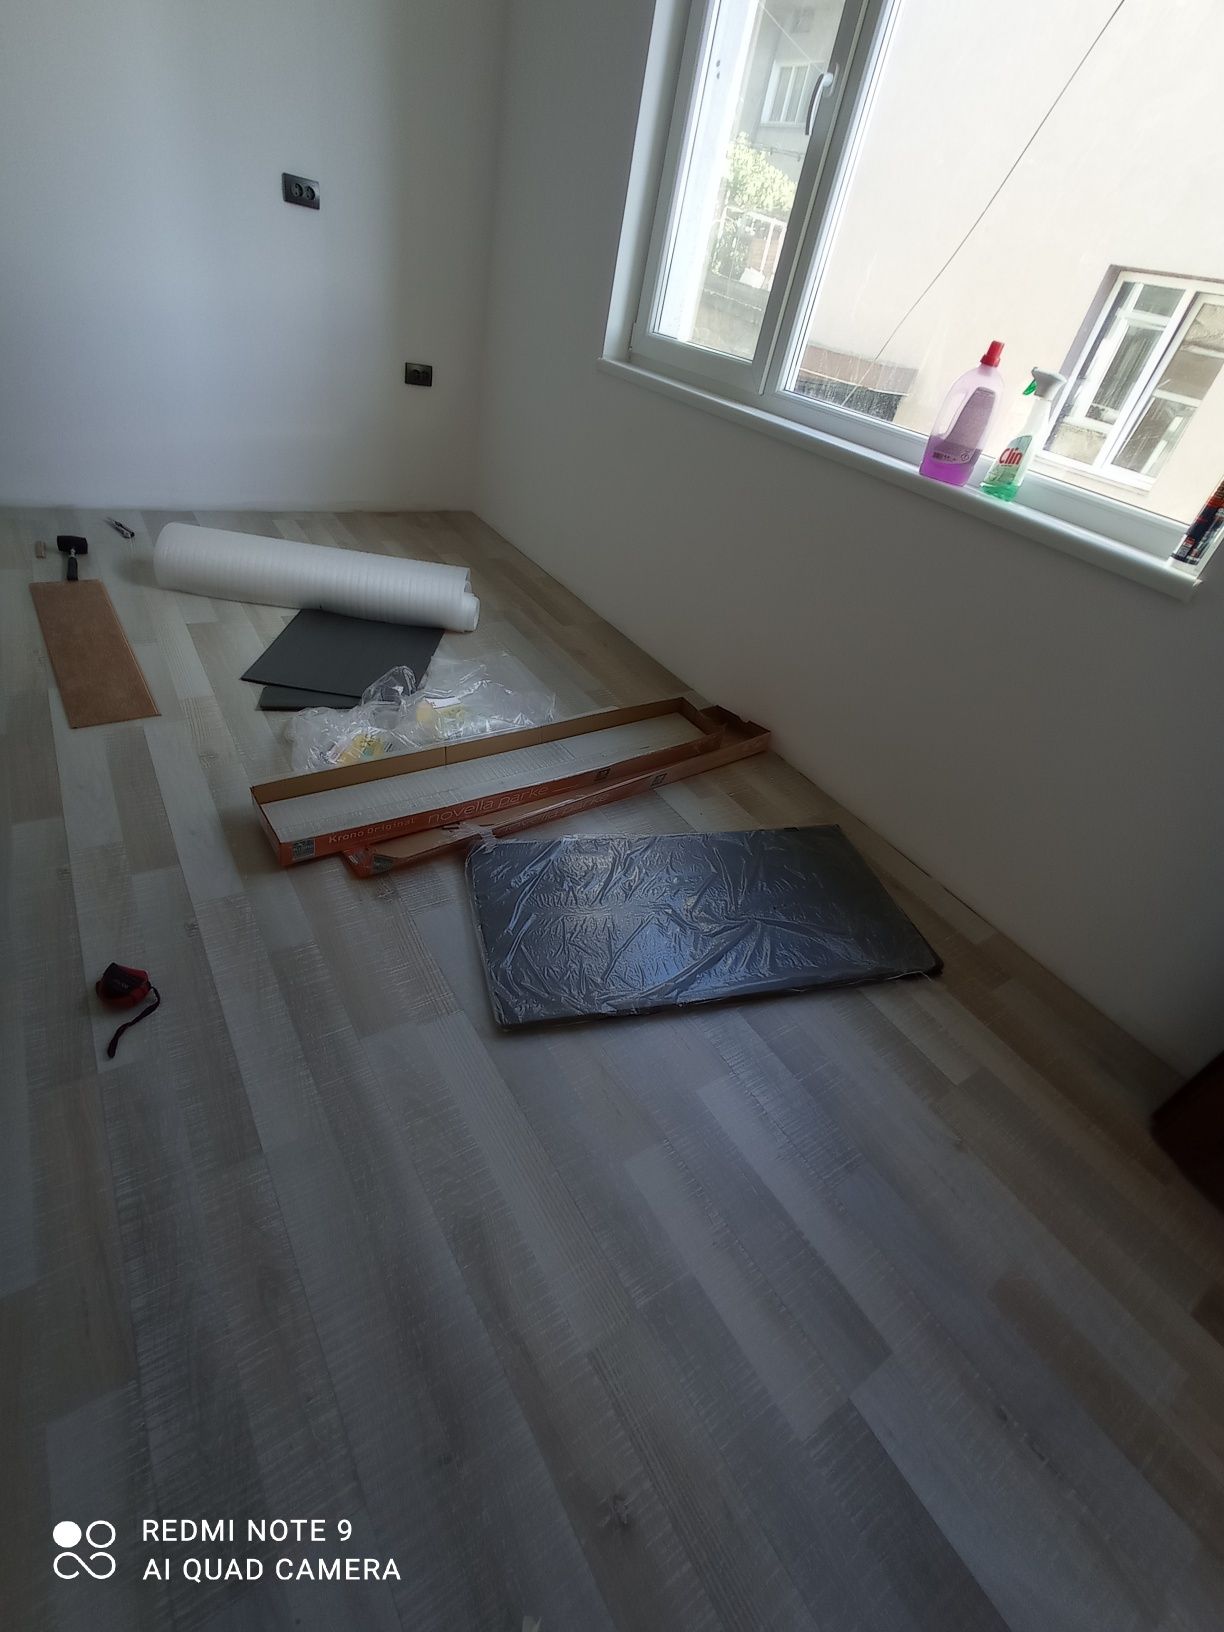 Сглобяване и изработка на мебели /подови настилки